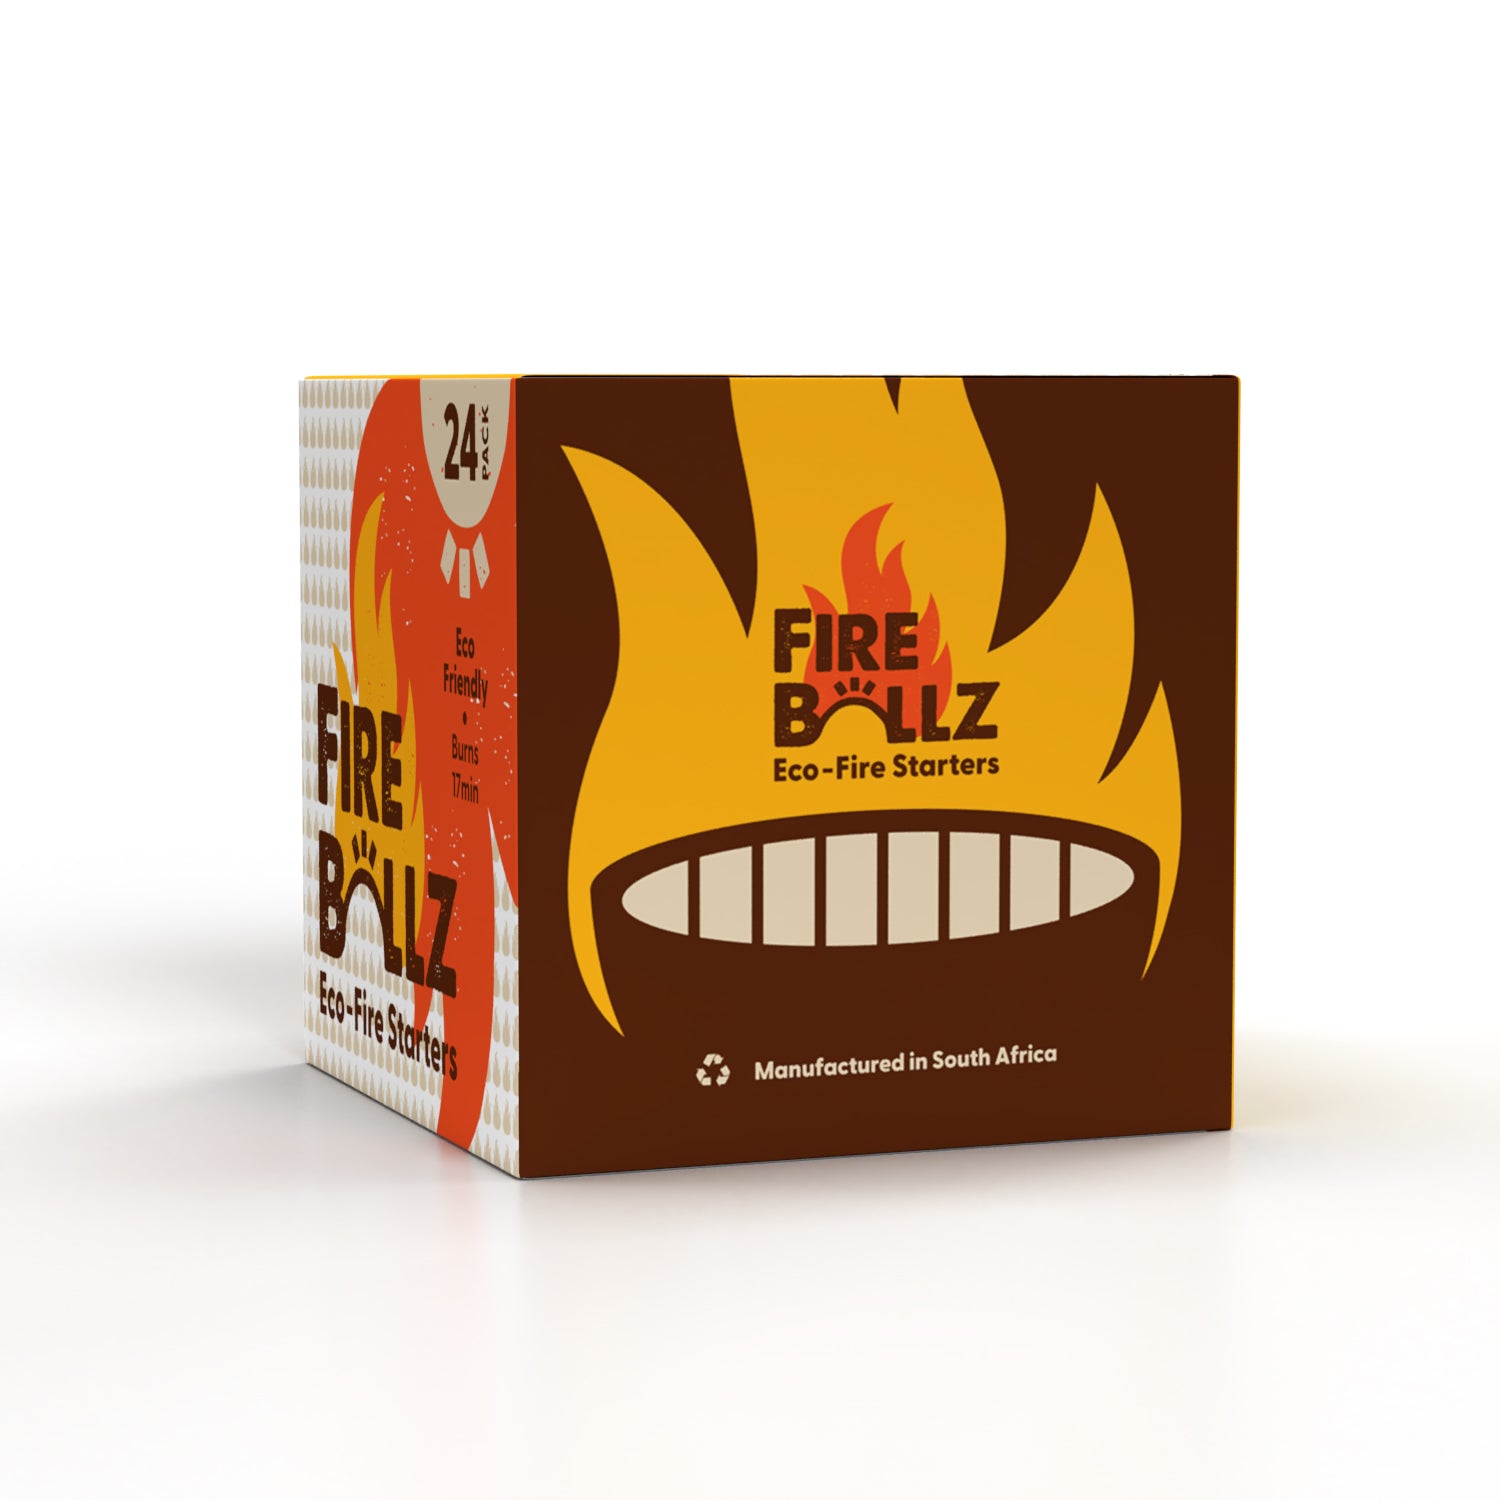 Fire Ballz Fire Starters 24 Pack